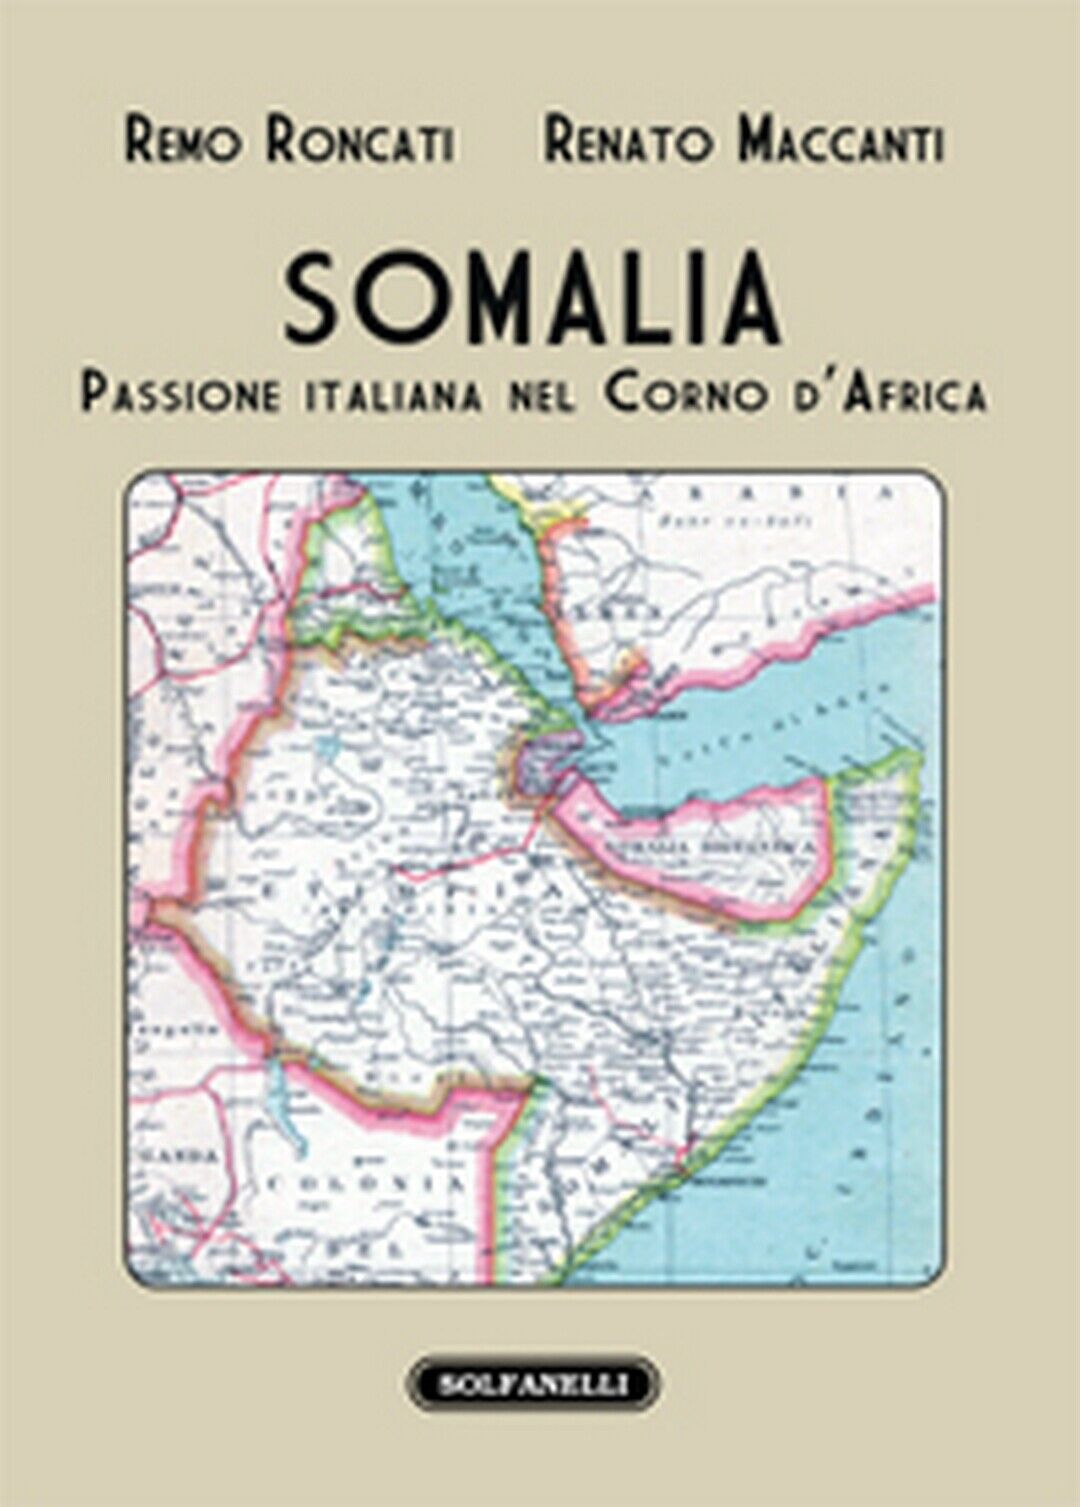 SOMALIA Passione italiana nel Corno d'Africa  di Remo Roncati E Renato Maccanti